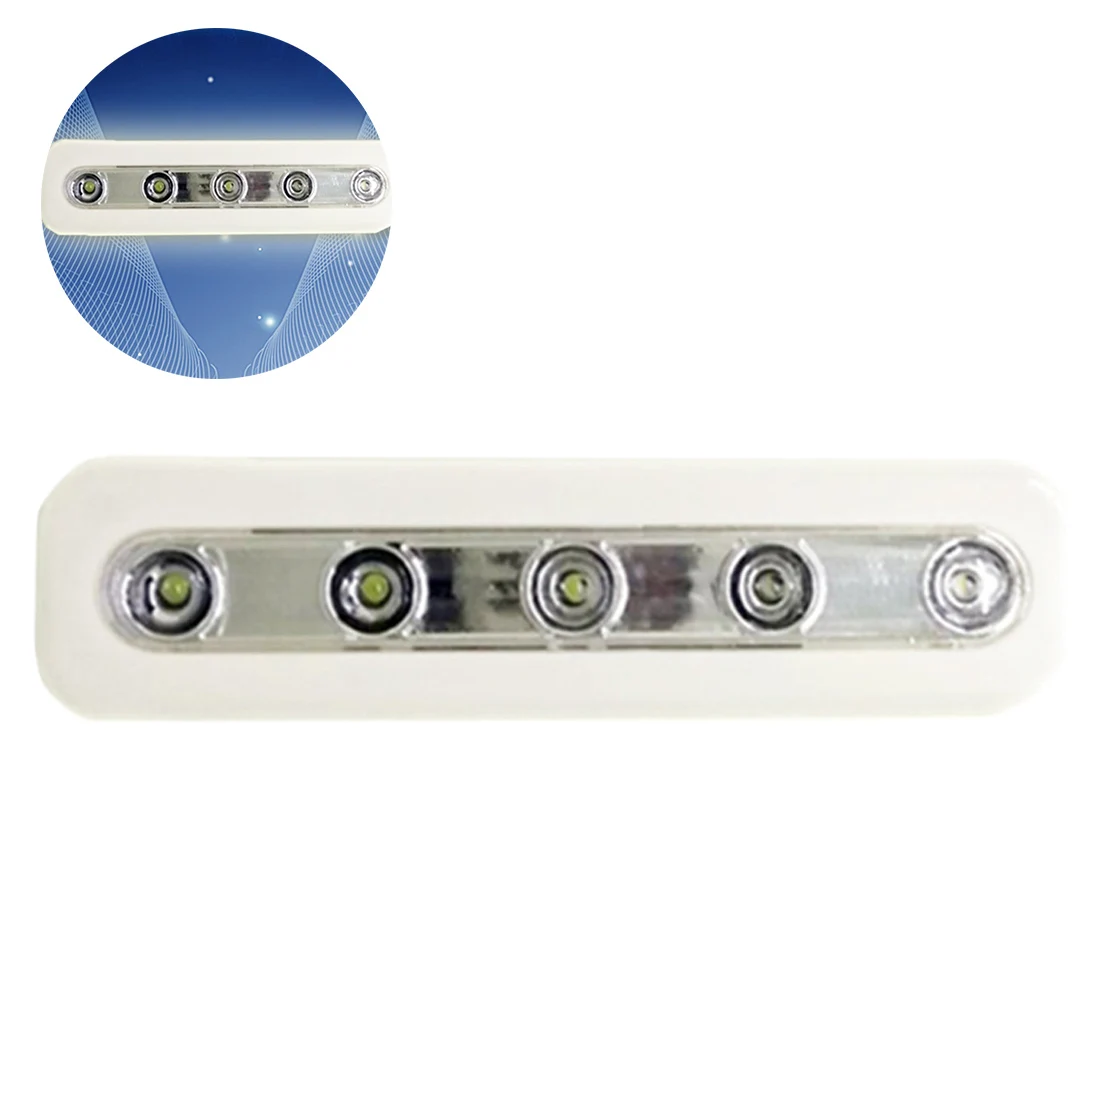 Светодиодный мини-светильник s 5 светодиодный s с селфи-палкой, беспроводной настенный светильник, аварийный шкаф, Ночной светильник, шкаф, светильник 18*4,5*2,5 см